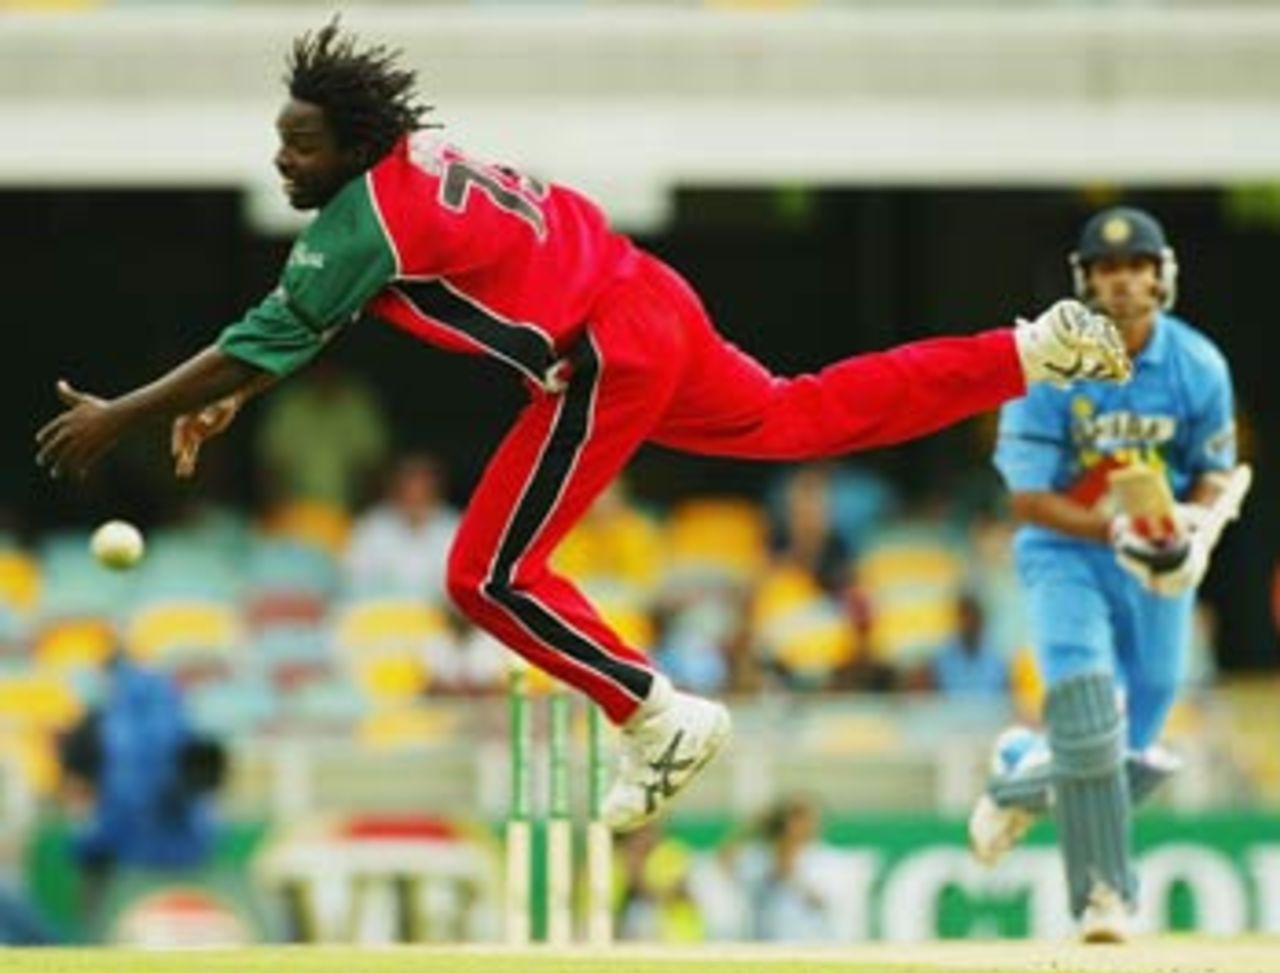 Douglas Hondo inspired Zimbabwe with athleticism in the field, India v Zimbabwe, VB Series, Brisbane, 6th ODI, January 20, 2004